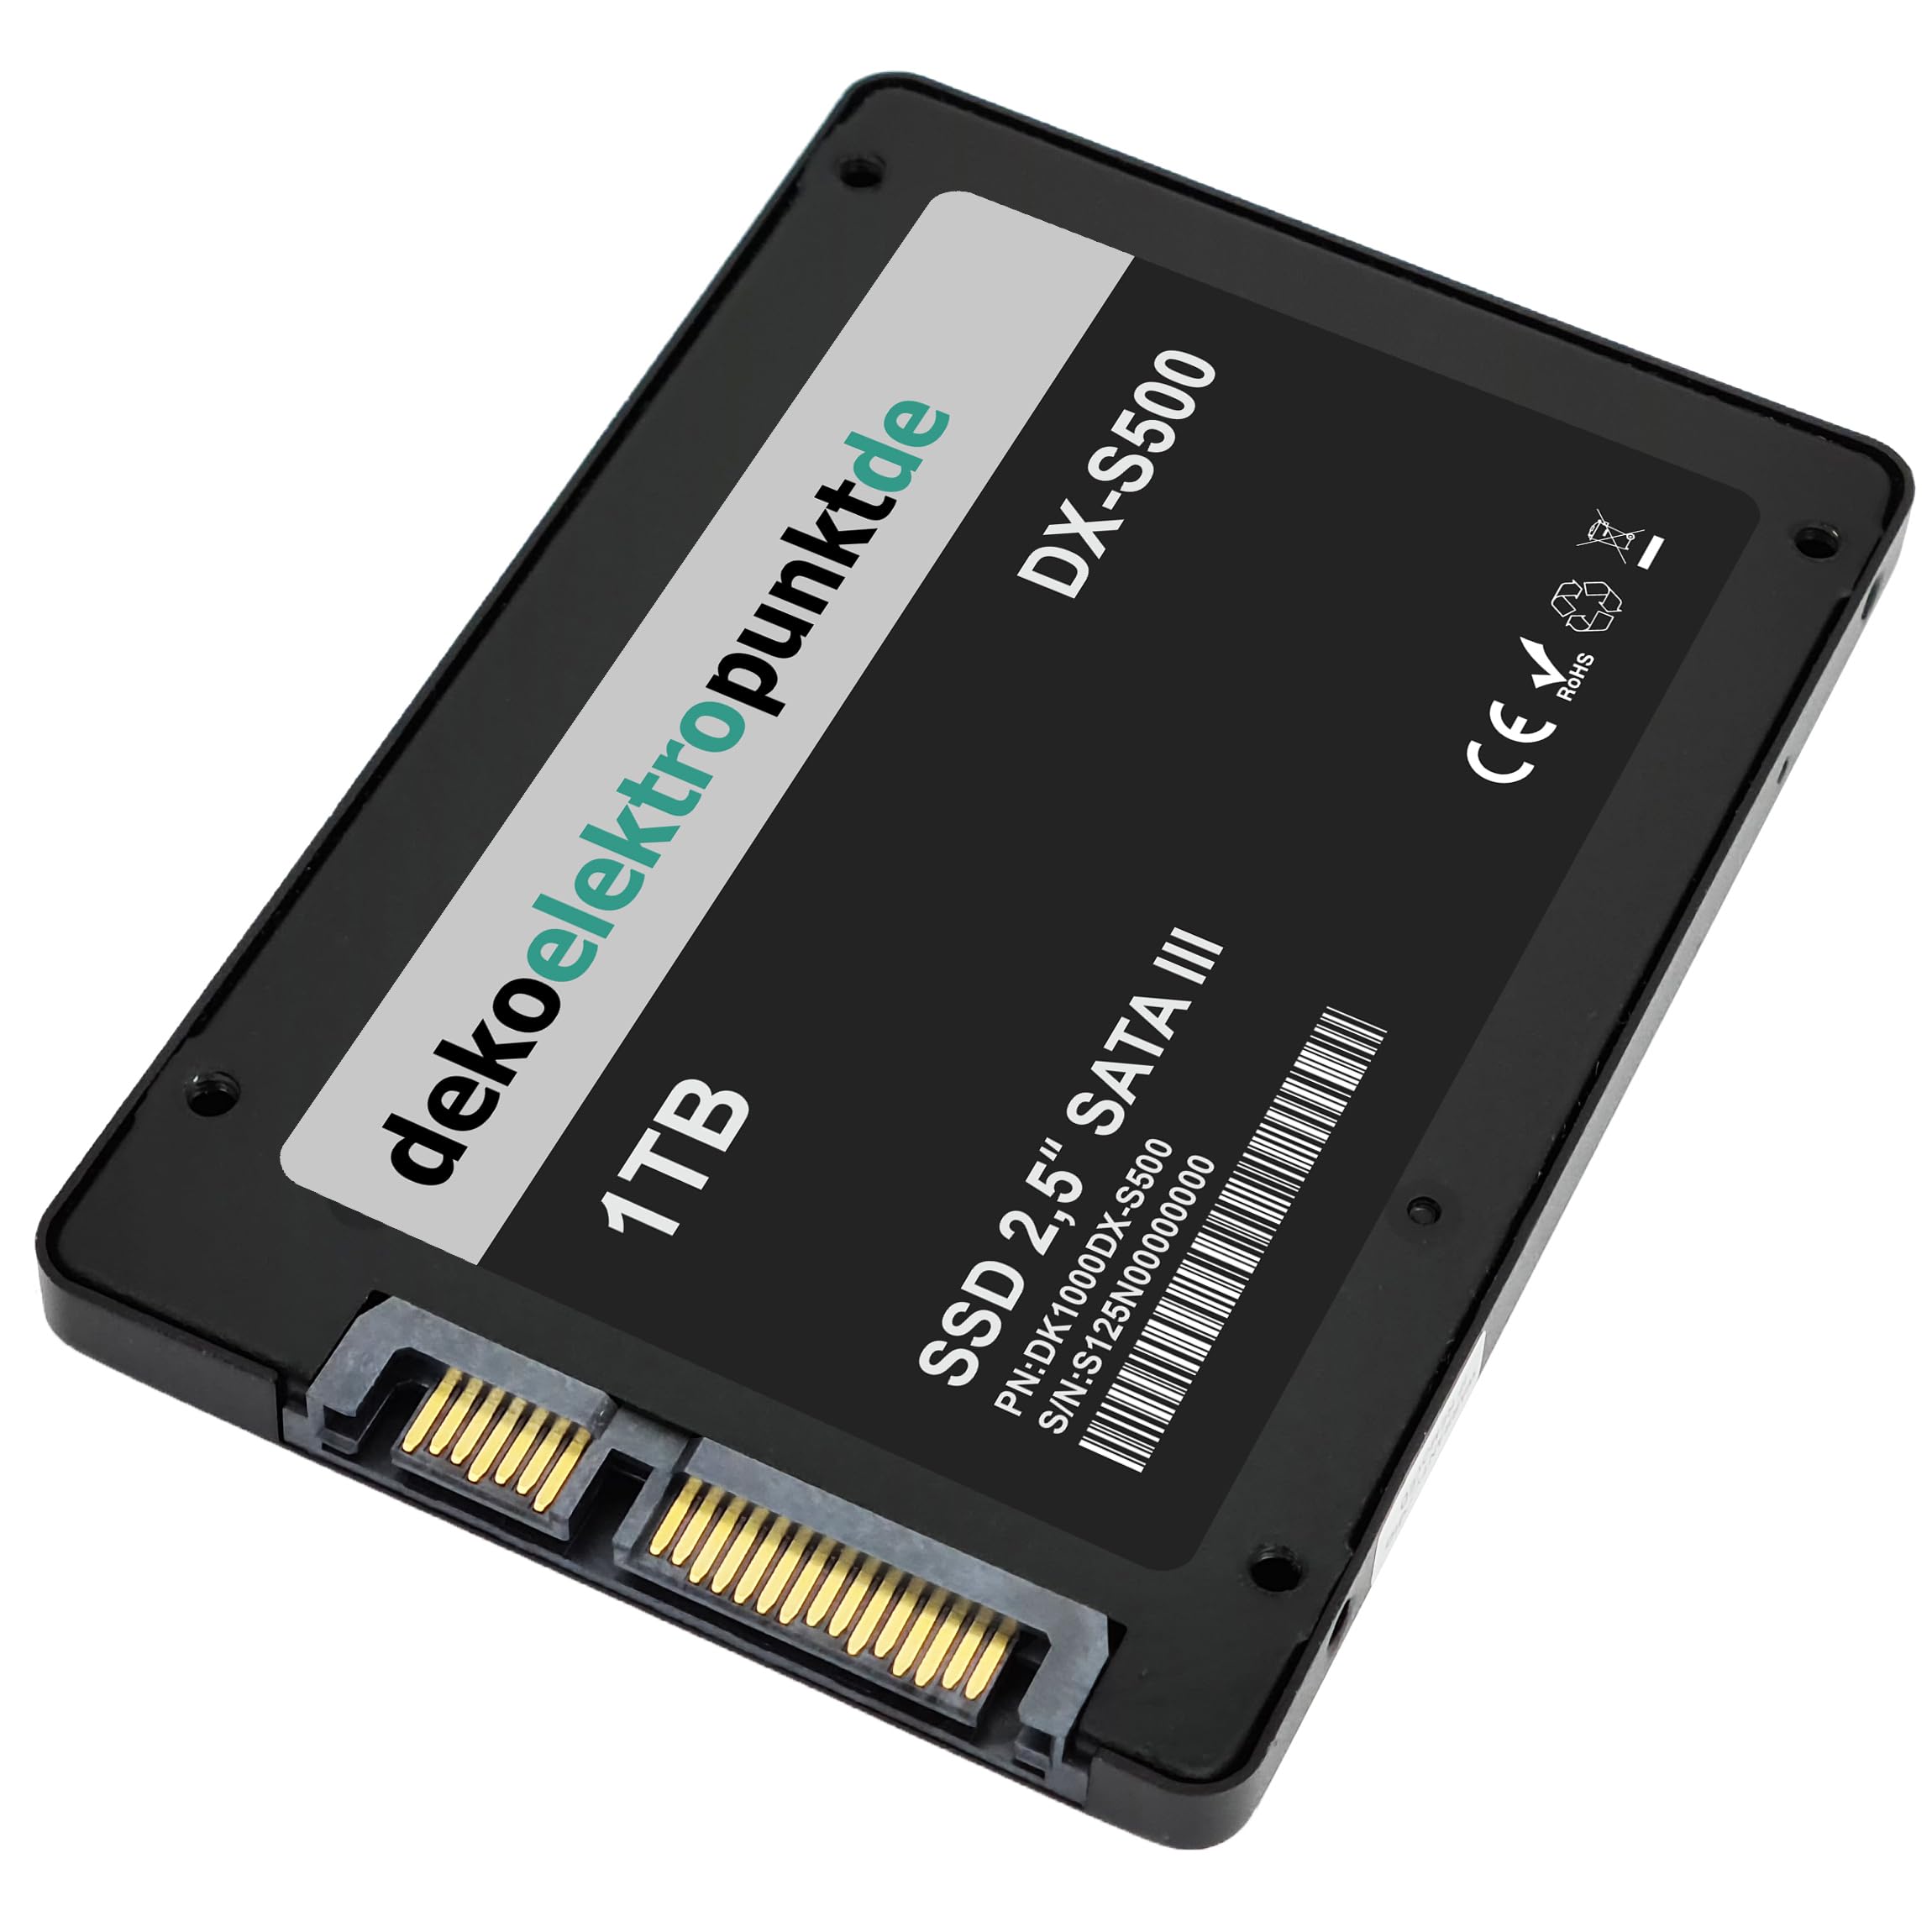 dekoelektropunktde 1TB SSD Festplatte passend für Toshiba Satellite M40 (PSM40), Alternatives Ersatzteil